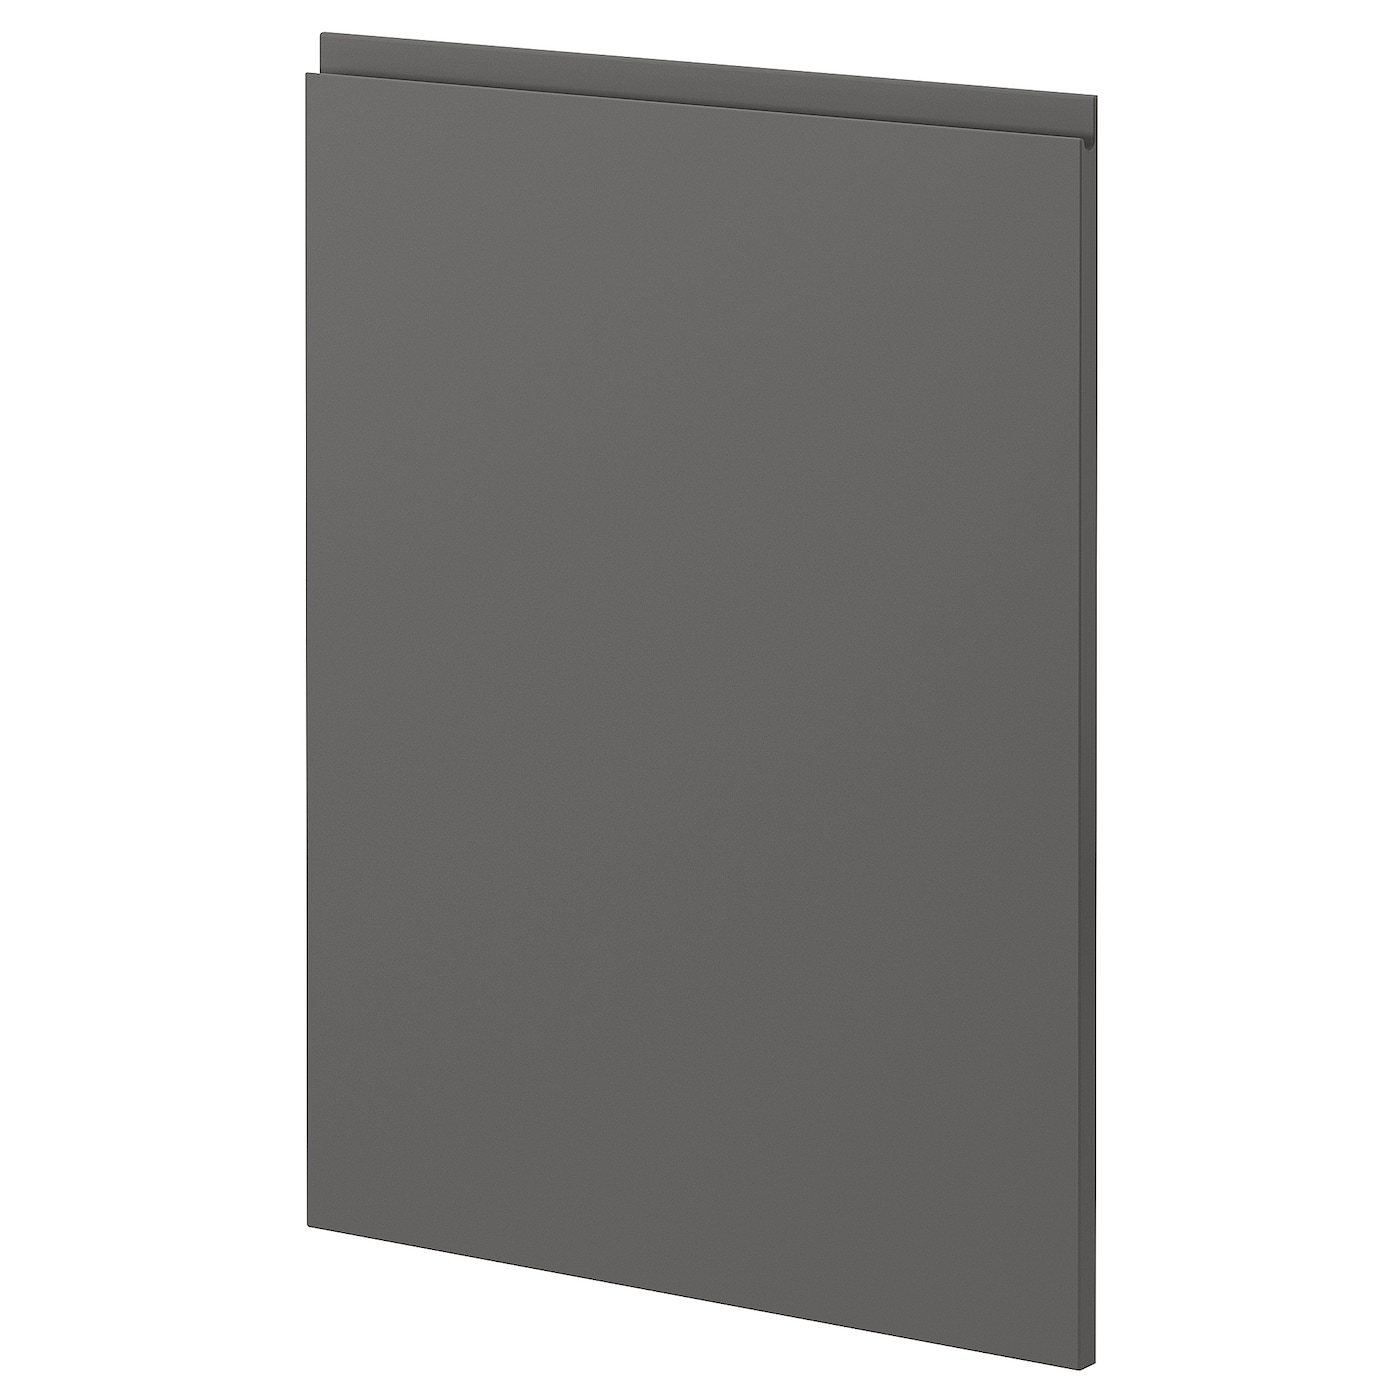 Фронтальная панель для посудомоечной машины - METOD IKEA/ МЕТОД ИКЕА, 88х60 см, серый